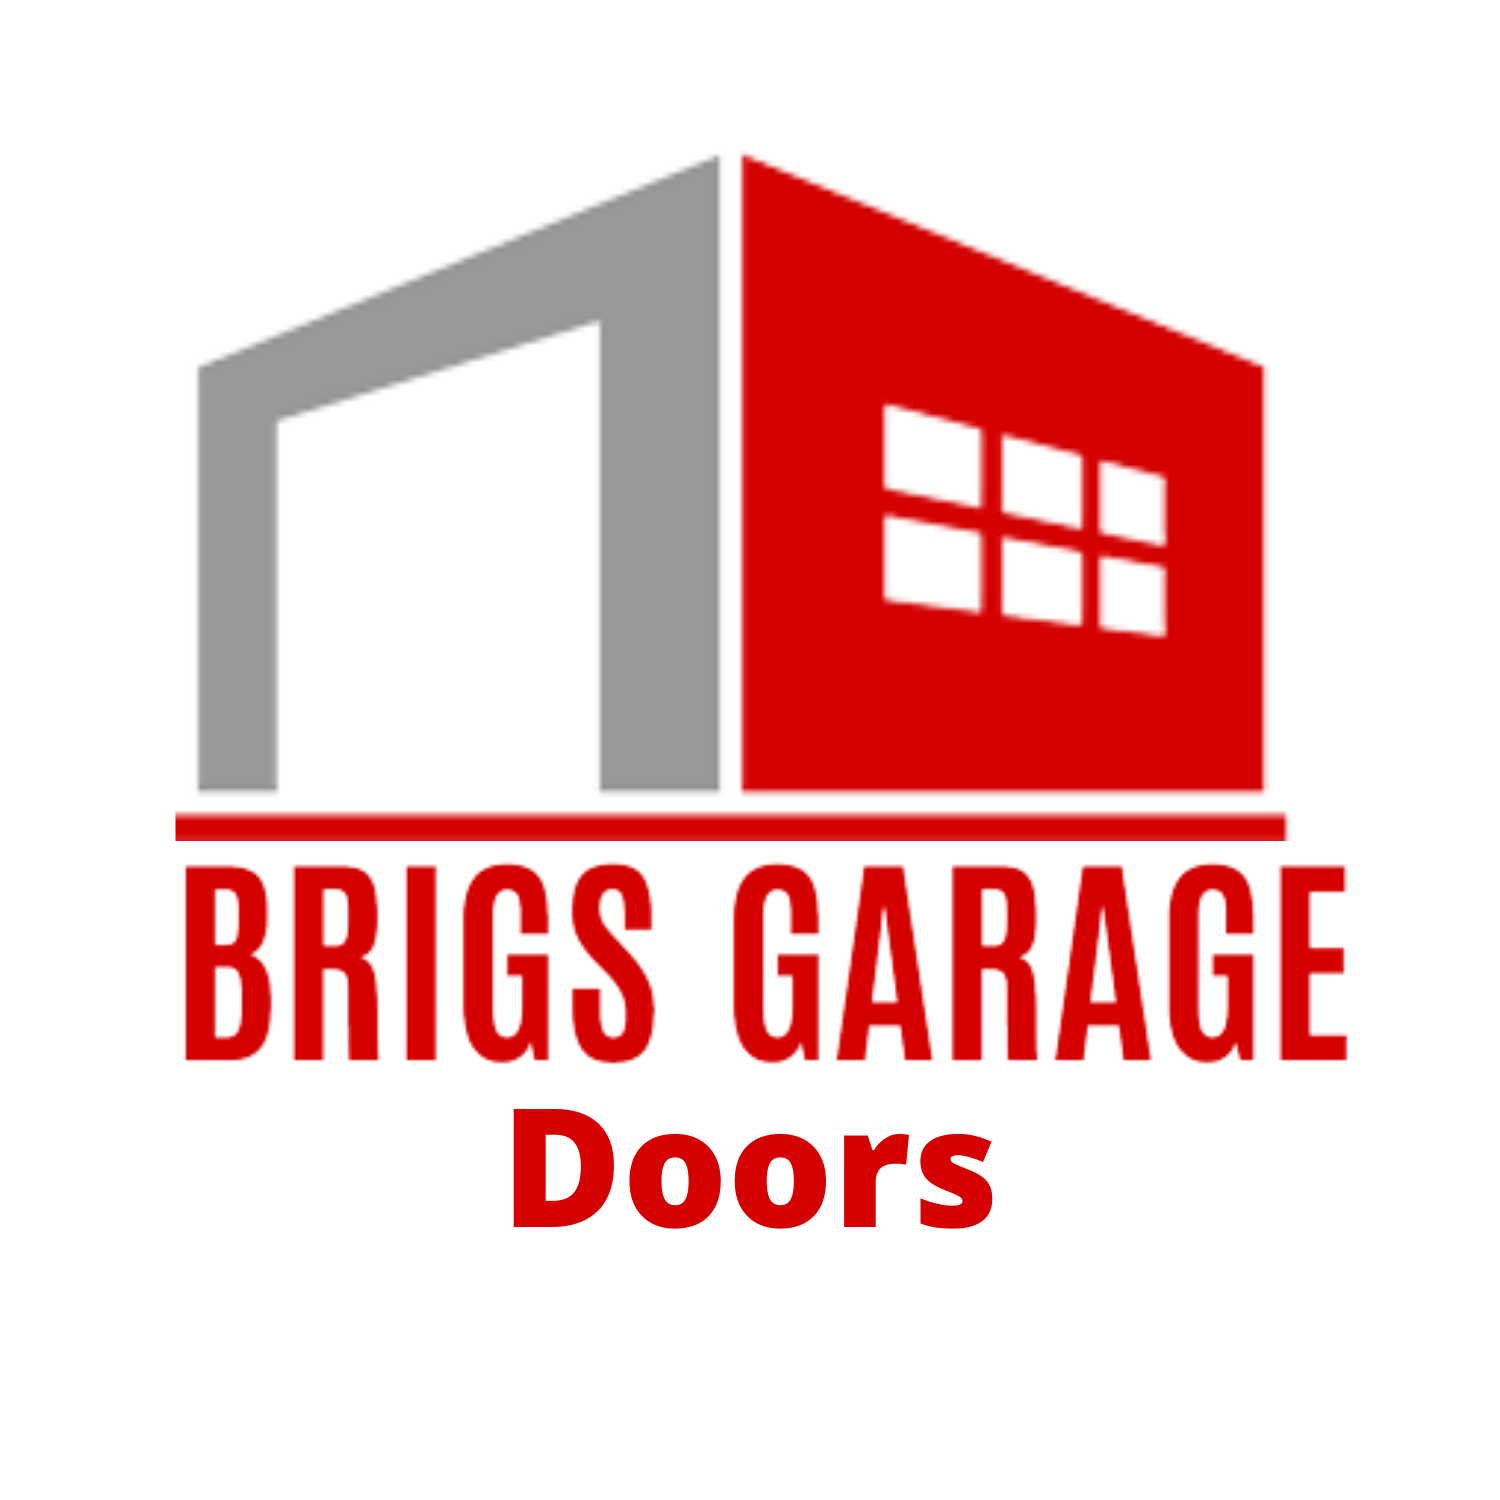 Brigs Garage doors